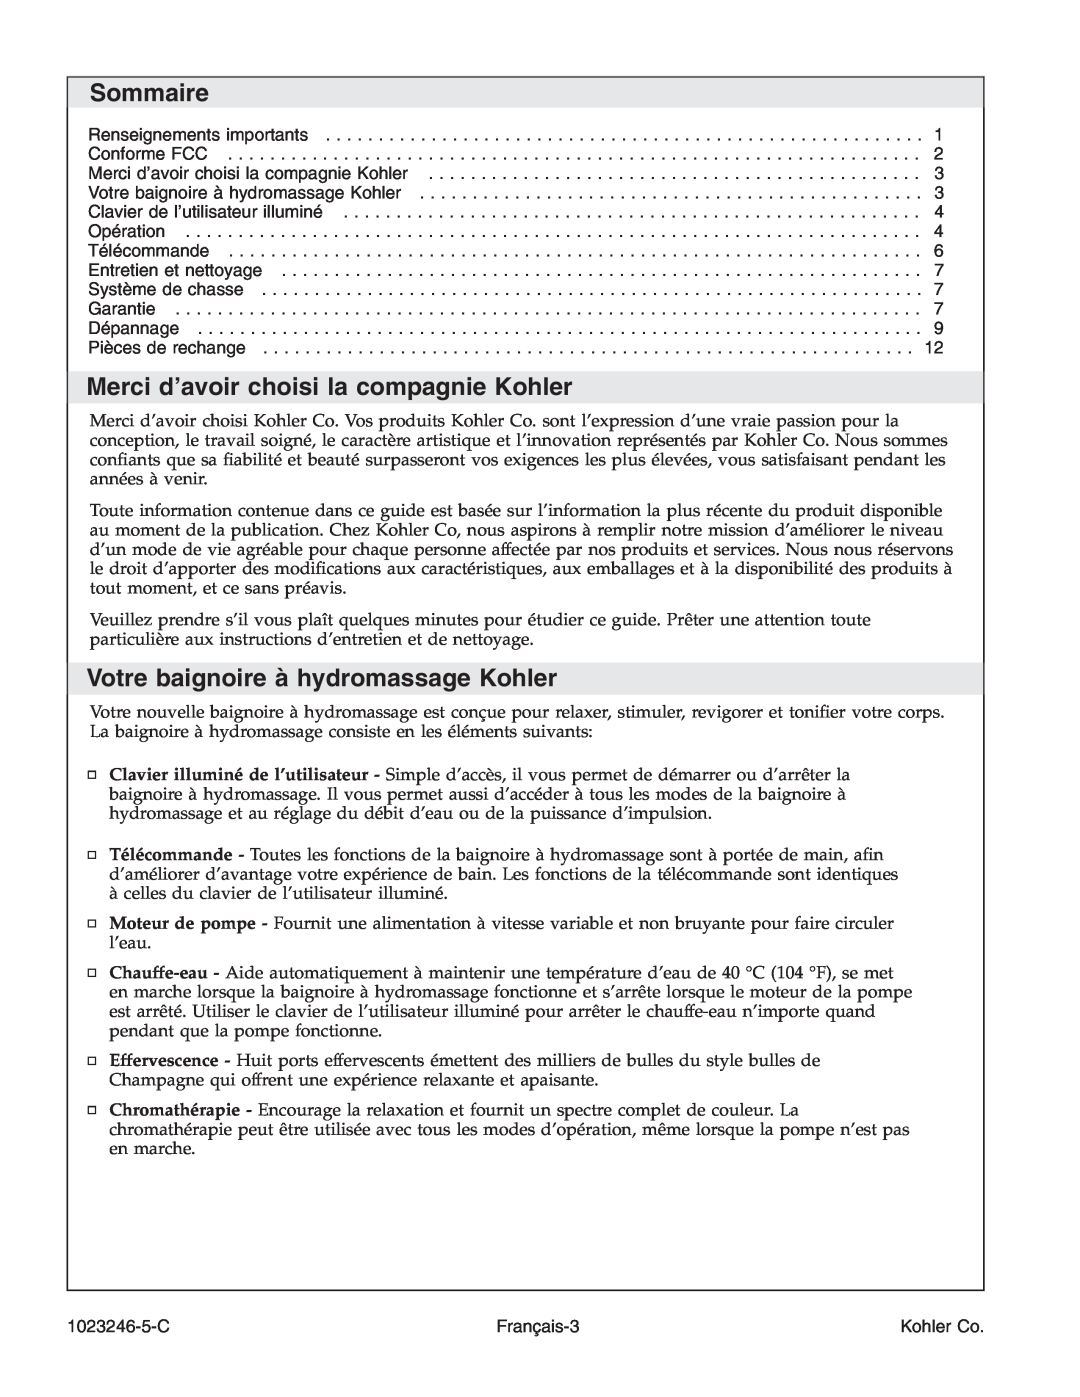 Kohler K-1418-CT manual Sommaire, Merci d’avoir choisi la compagnie Kohler, Votre baignoire à hydromassage Kohler 